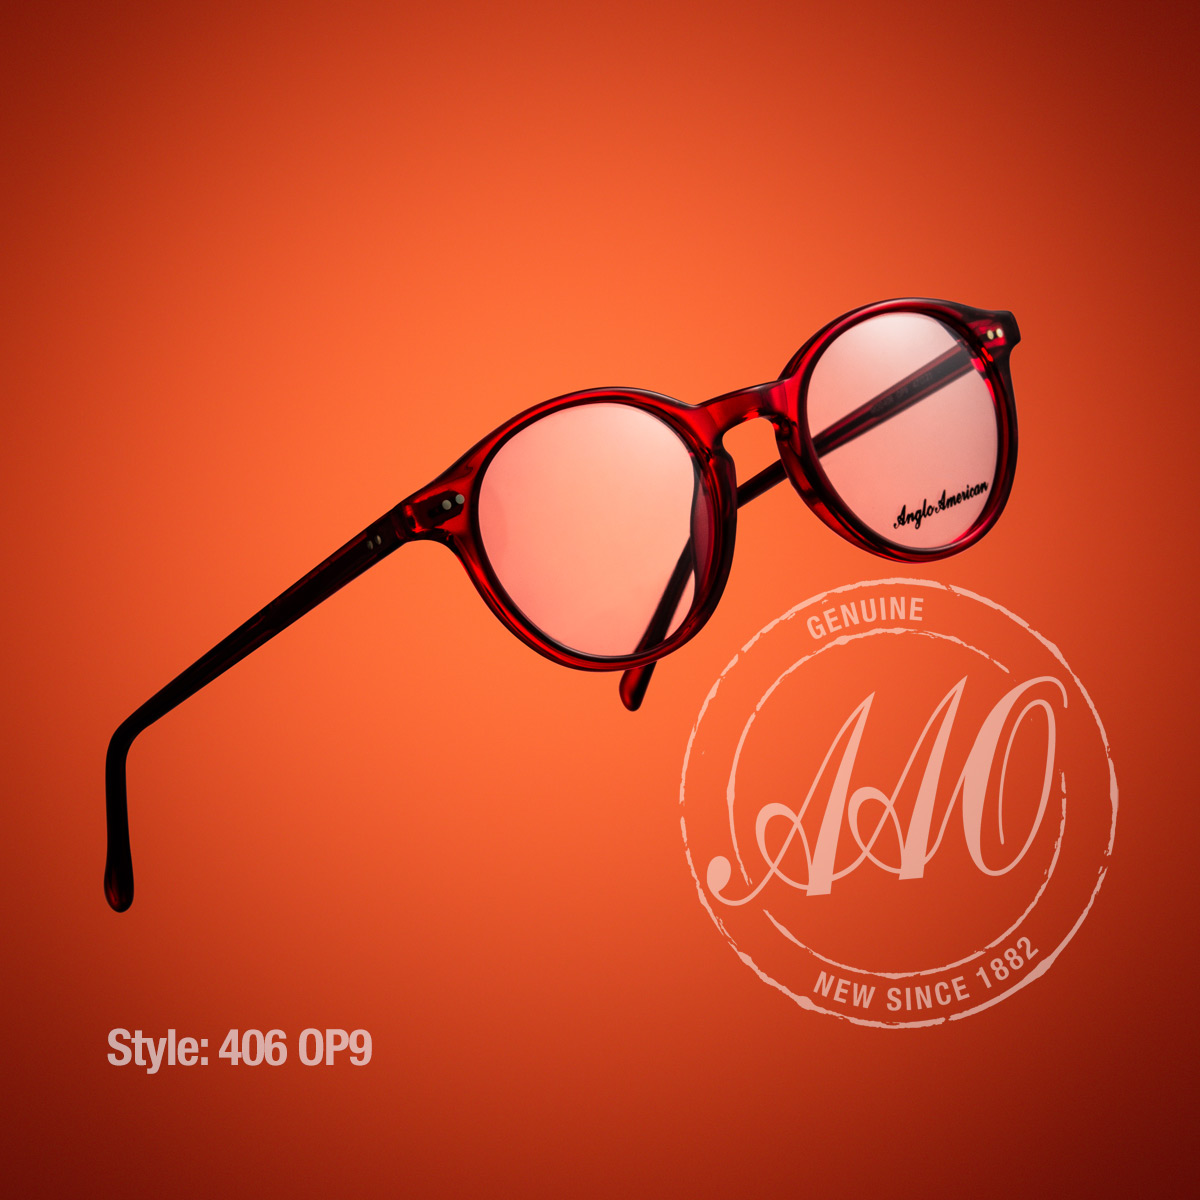 Style: 406 OP9